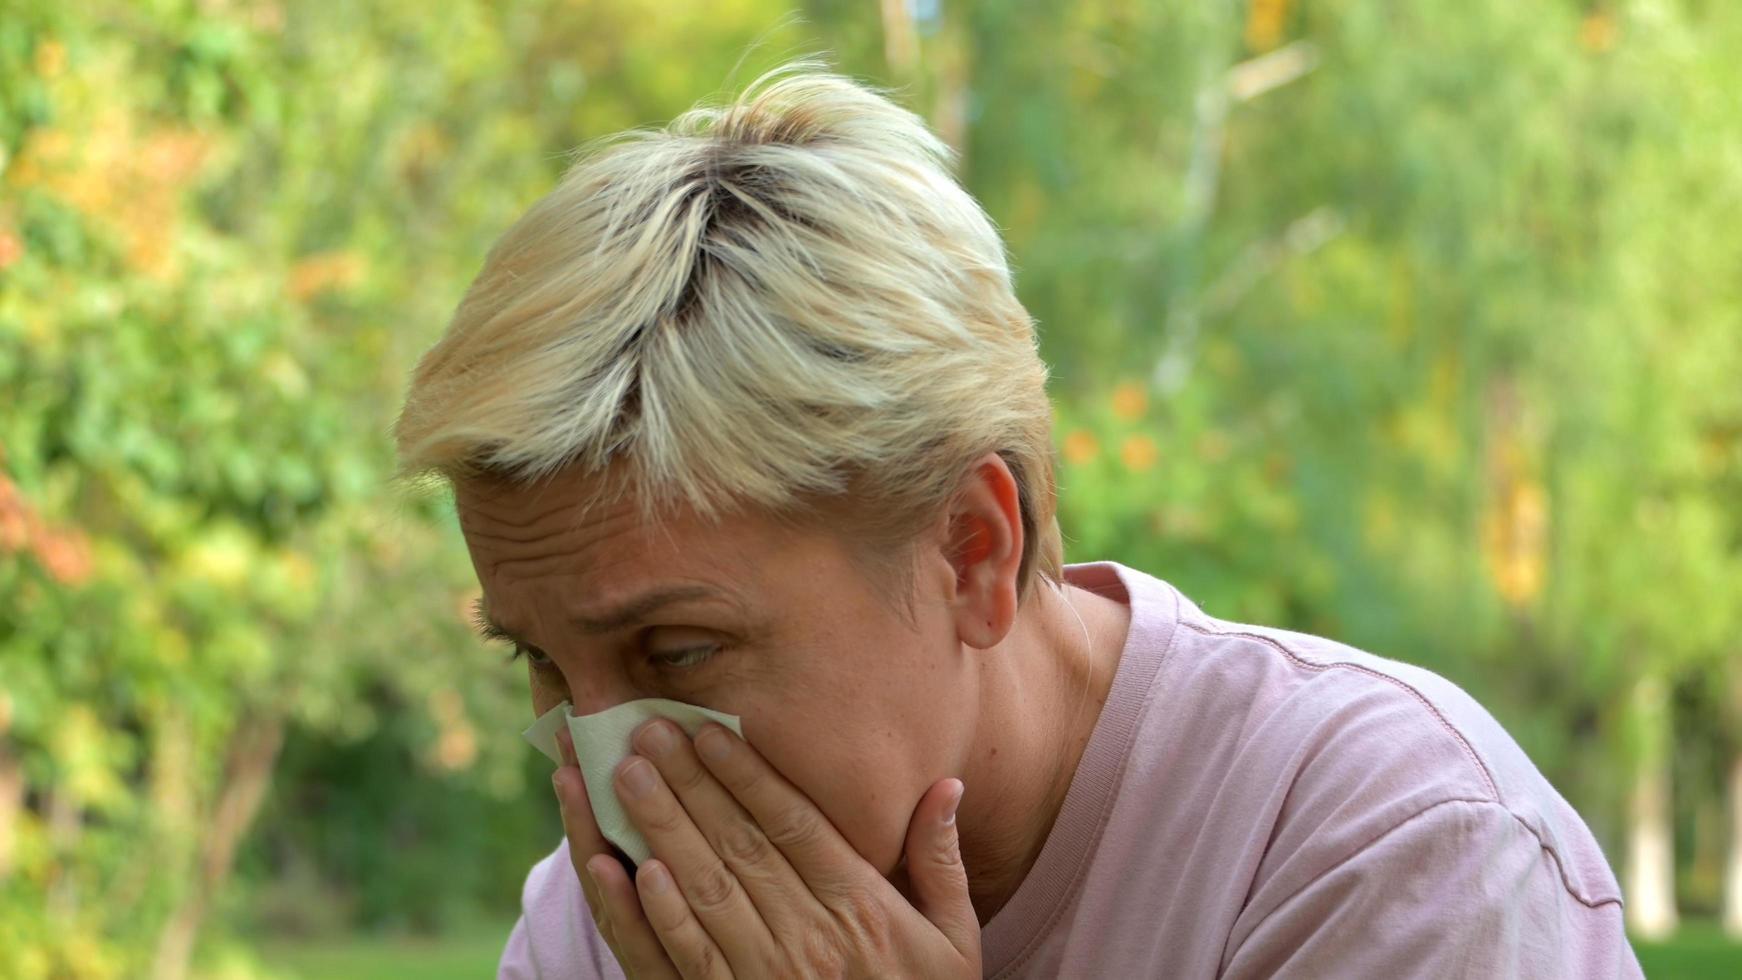 una niña con cabello rubio y un corte de pelo corto estornuda por alergias y se limpia la nariz con una servilleta en el contexto de la naturaleza verde foto